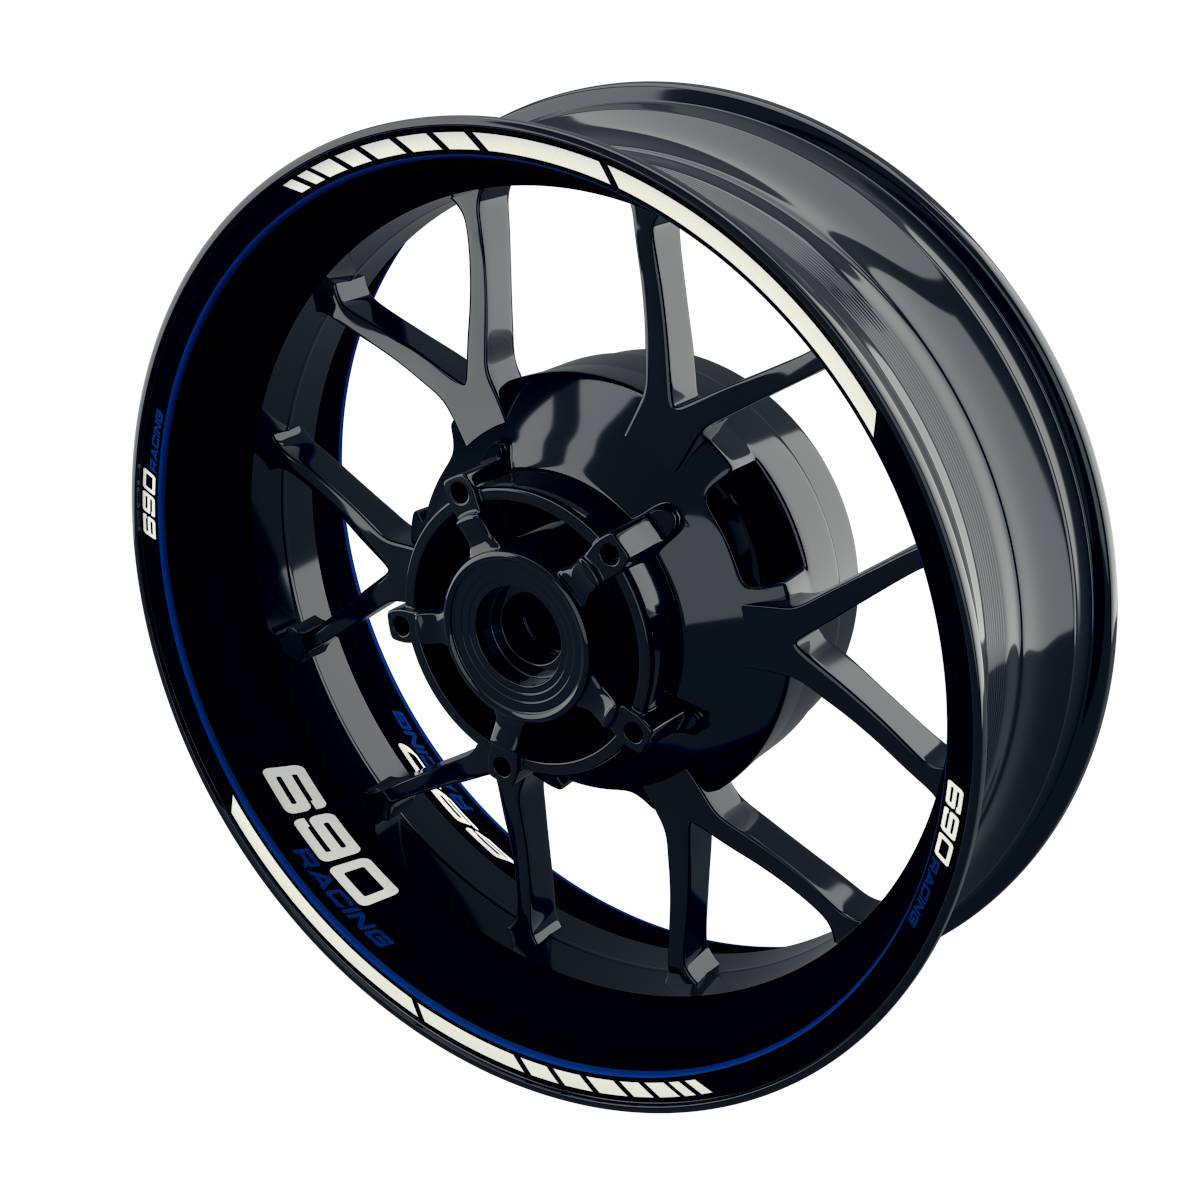 690 Racing Rim Decals Clean Wheelsticker Premium